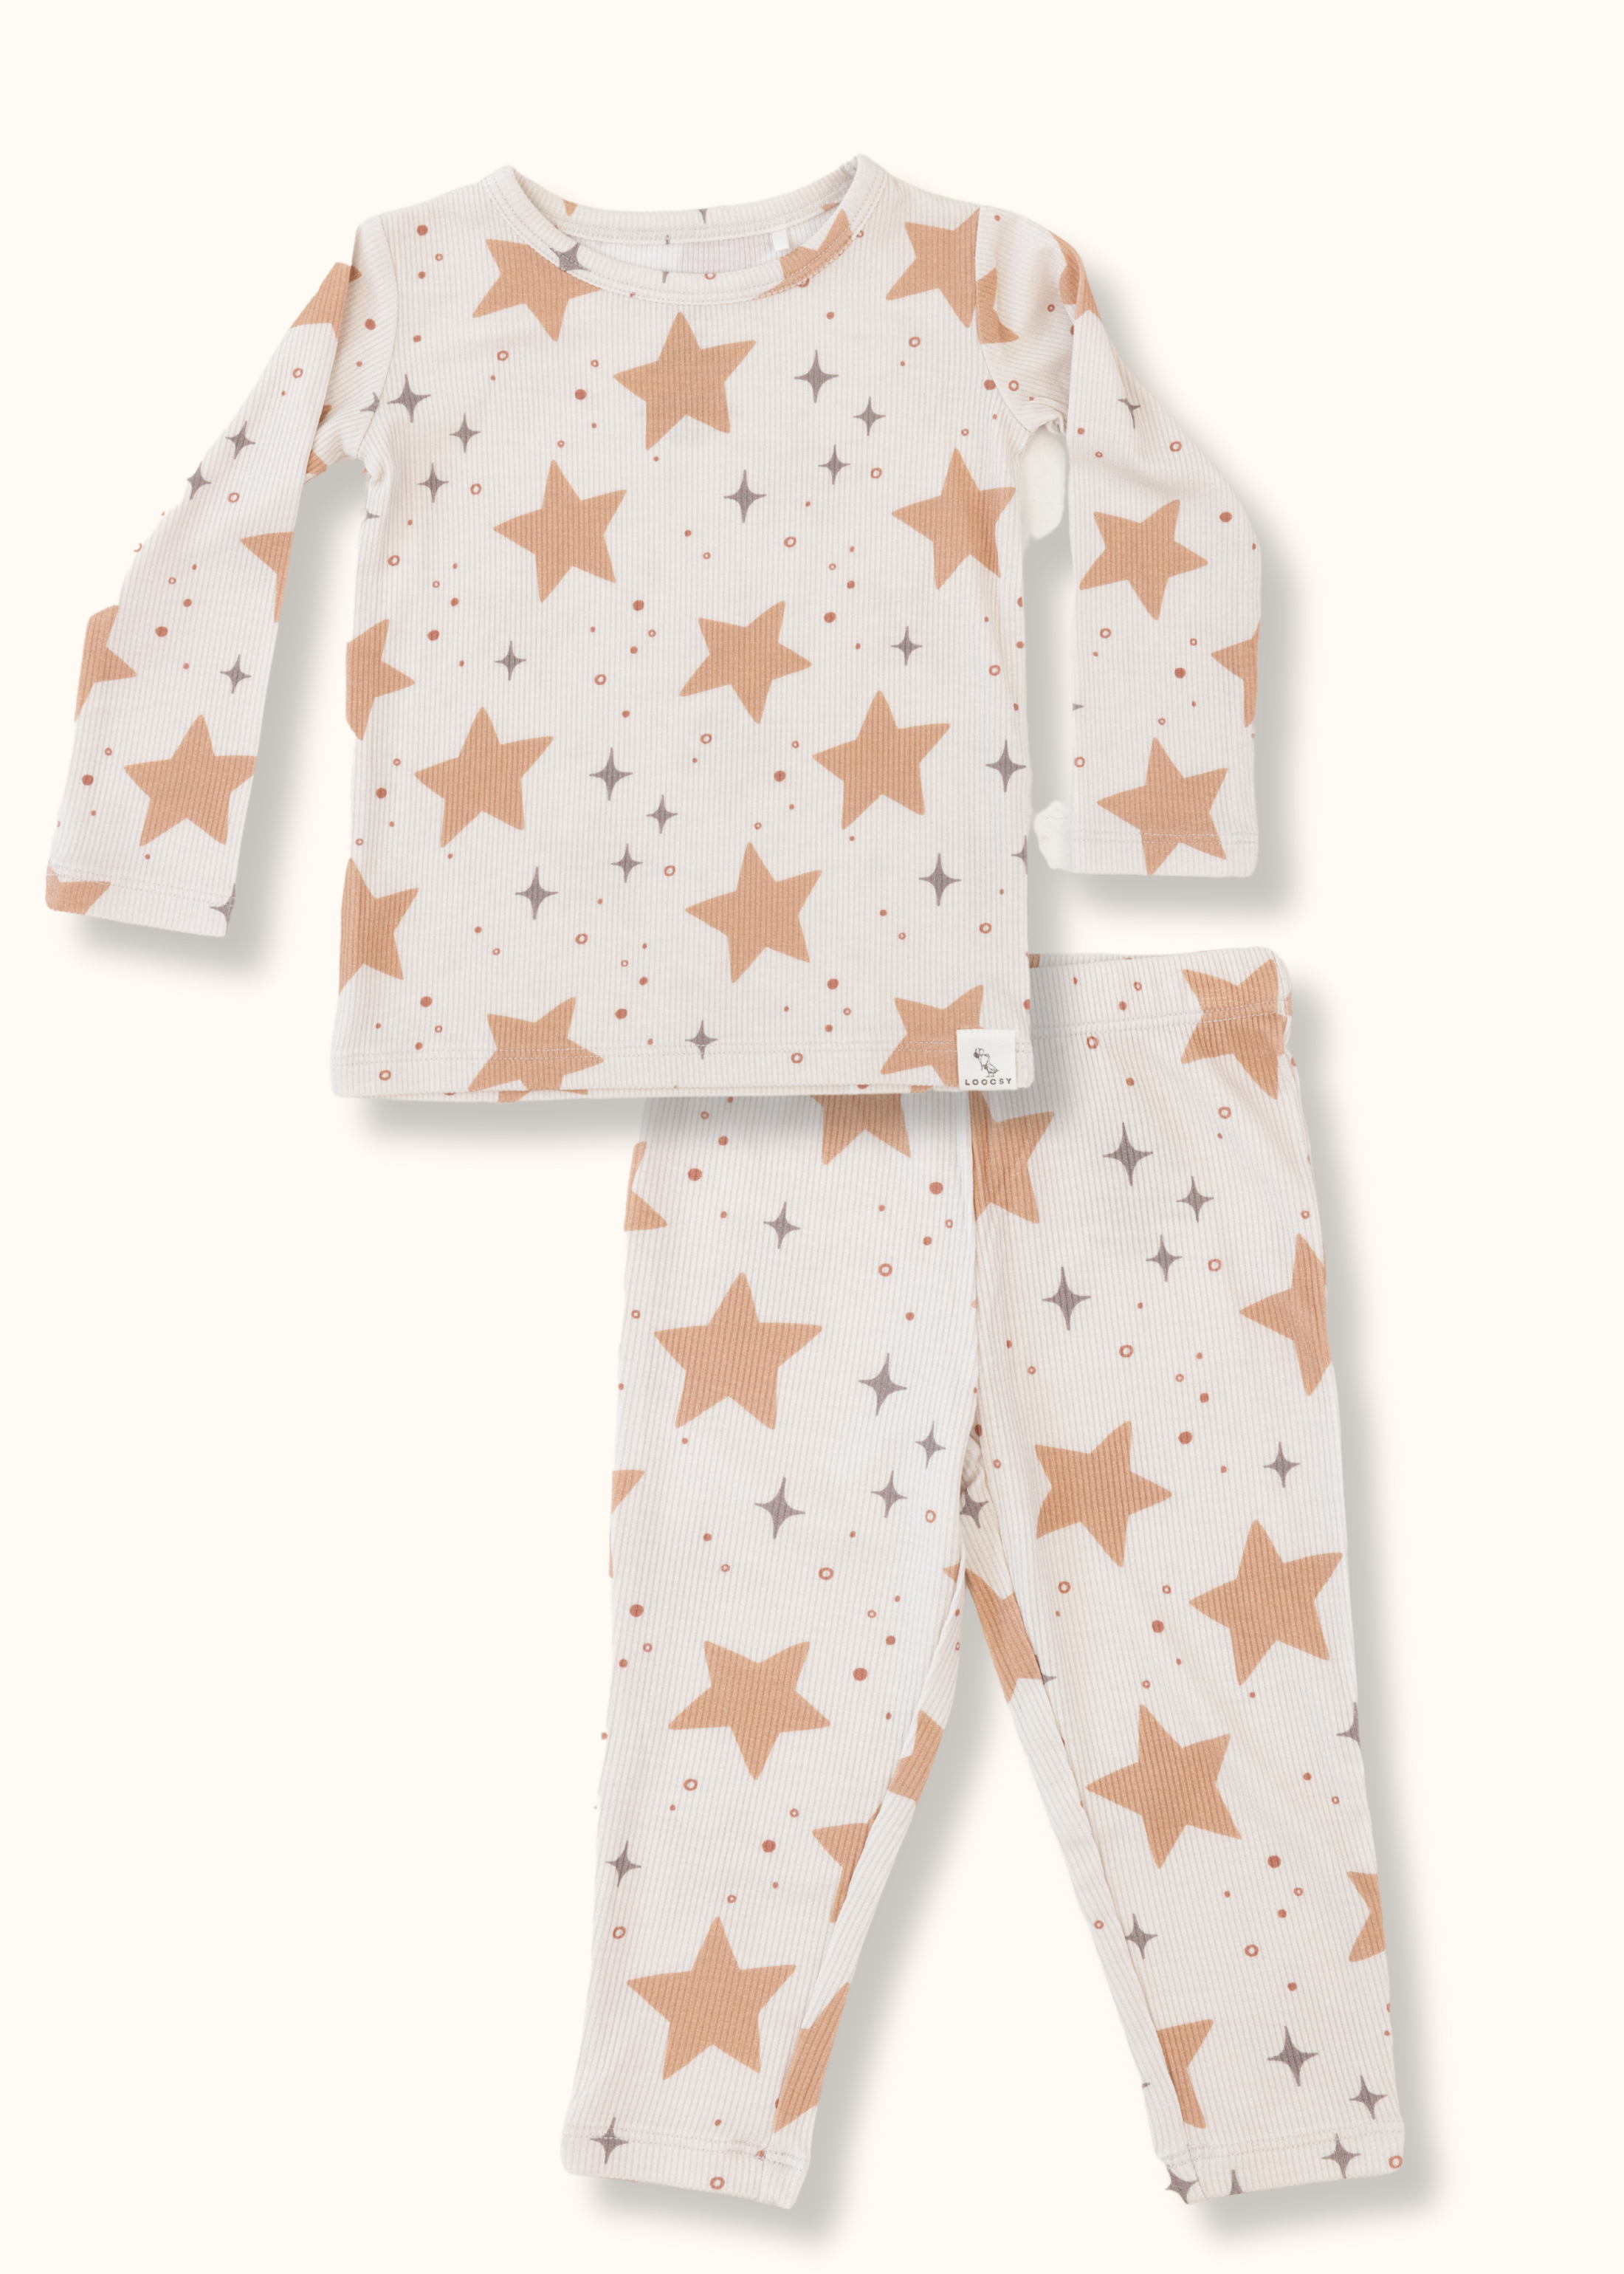 Counting Stars Pajama Set